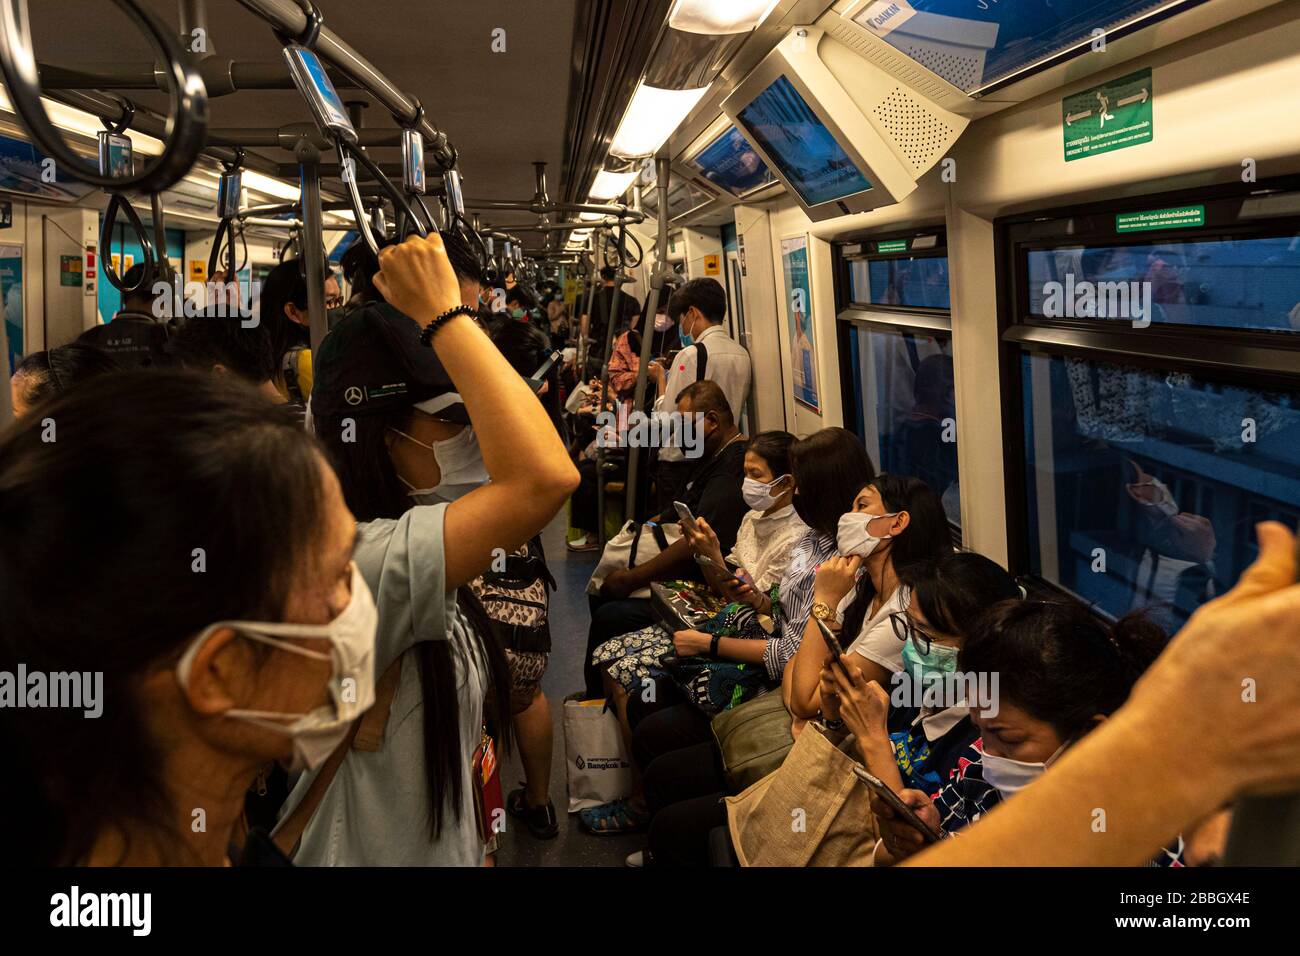 Bangkok, Bangkok, Thailand. März 2020. In einem gepackten U-Bahn-Wagen können Fahrer auf der U-Bahn keine soziale Distanzierung üben. Die Bürger Bangkoks leben seit dem 26. März unter einer teilweisen Sperrung der Stadt, da die tägliche Anzahl der bestätigten Covid-19-Fälle stetig zugenommen hat. Soziale Distanzierung und Selbstisolation wurden von den Behörden gefördert, obwohl es aufgrund der täglichen Verpflichtungen, die viele Menschen haben, oft schwierig ist, diese beizubehalten. Credit: Adryel Talamantes/ZUMA Wire/Alamy Live News Stockfoto